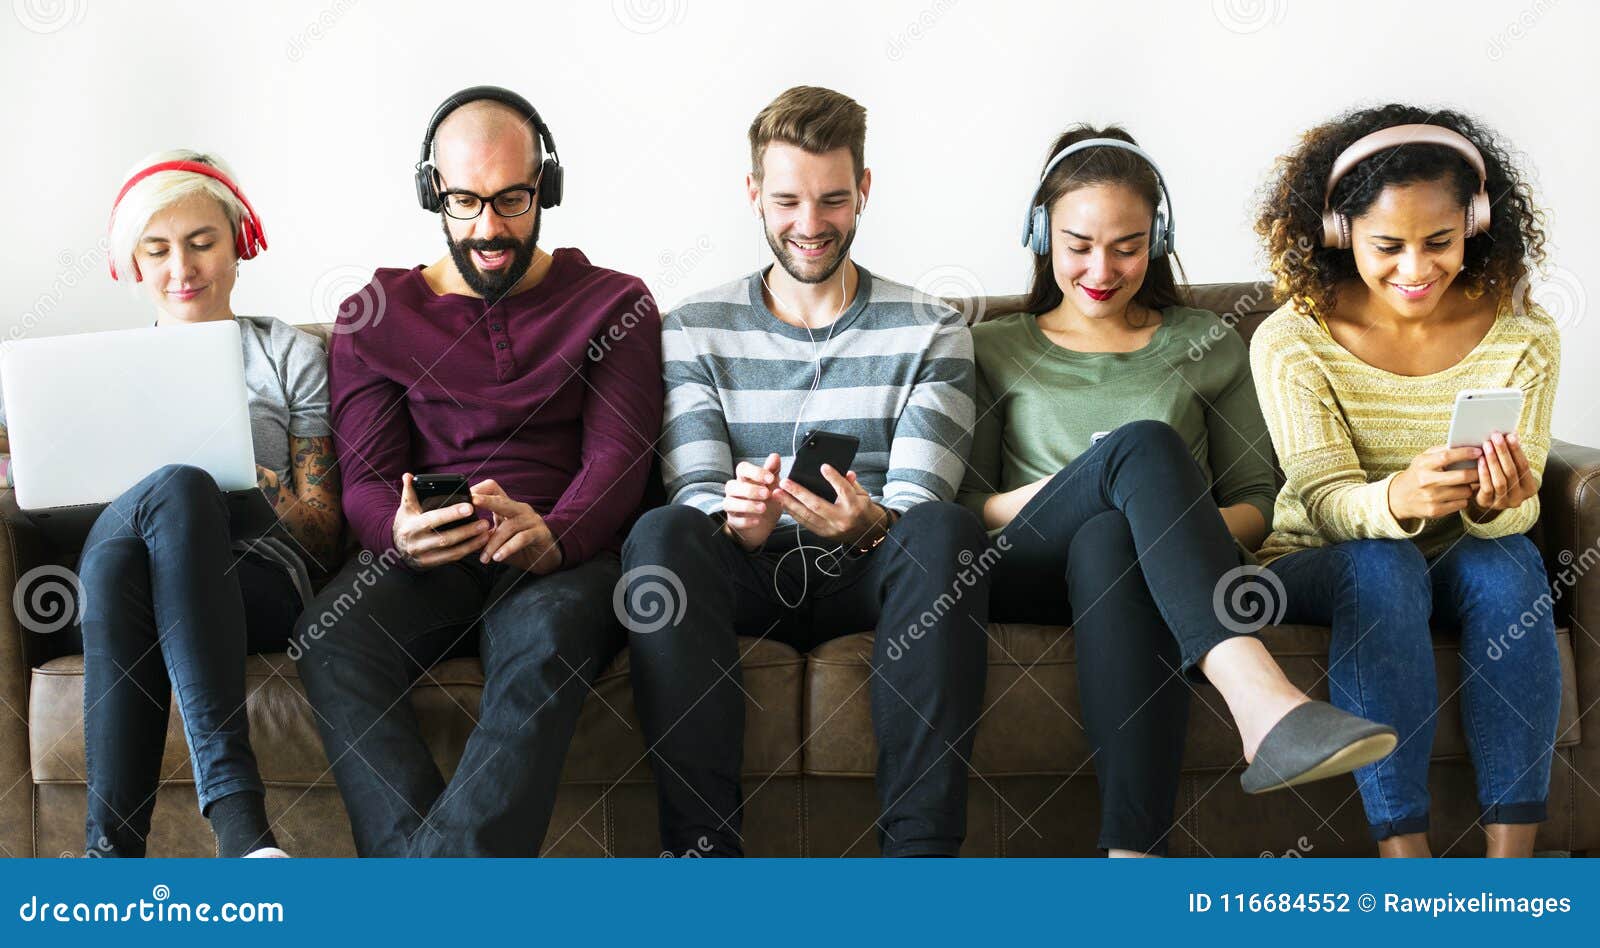 group of people enjoying music streaming